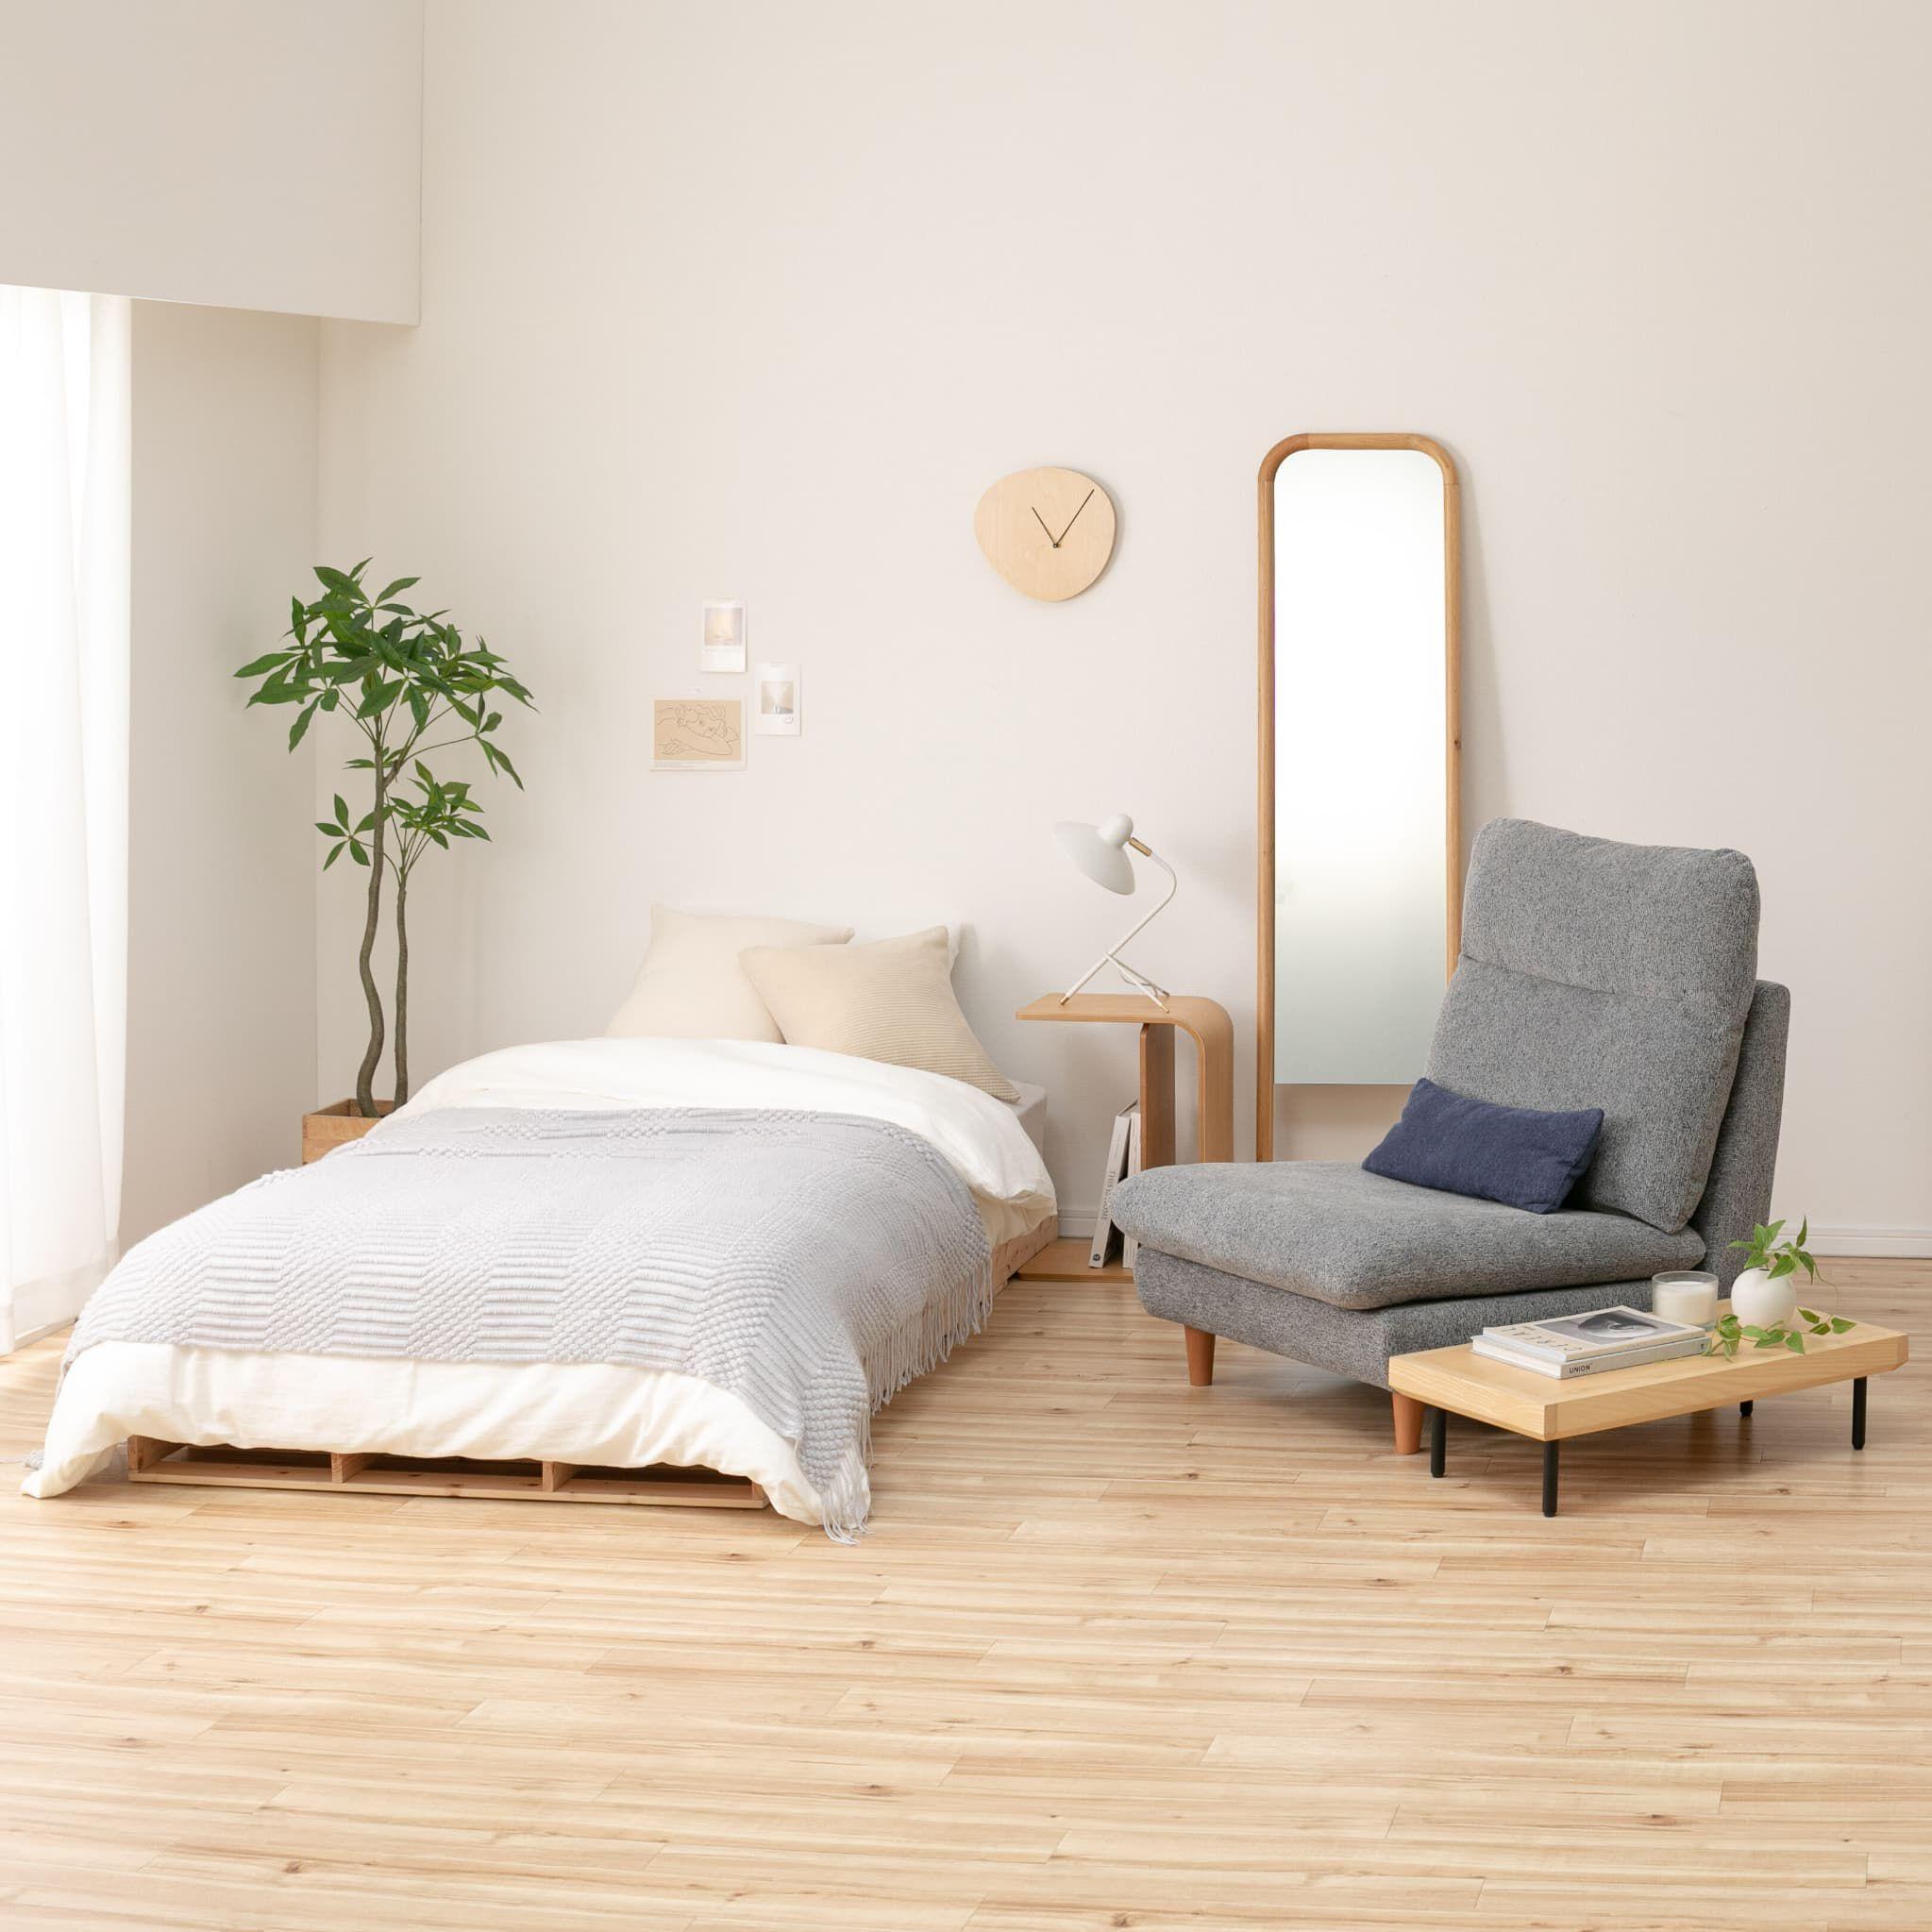 余裕のある空間で快適な睡眠をとれる寝具とソファの配置